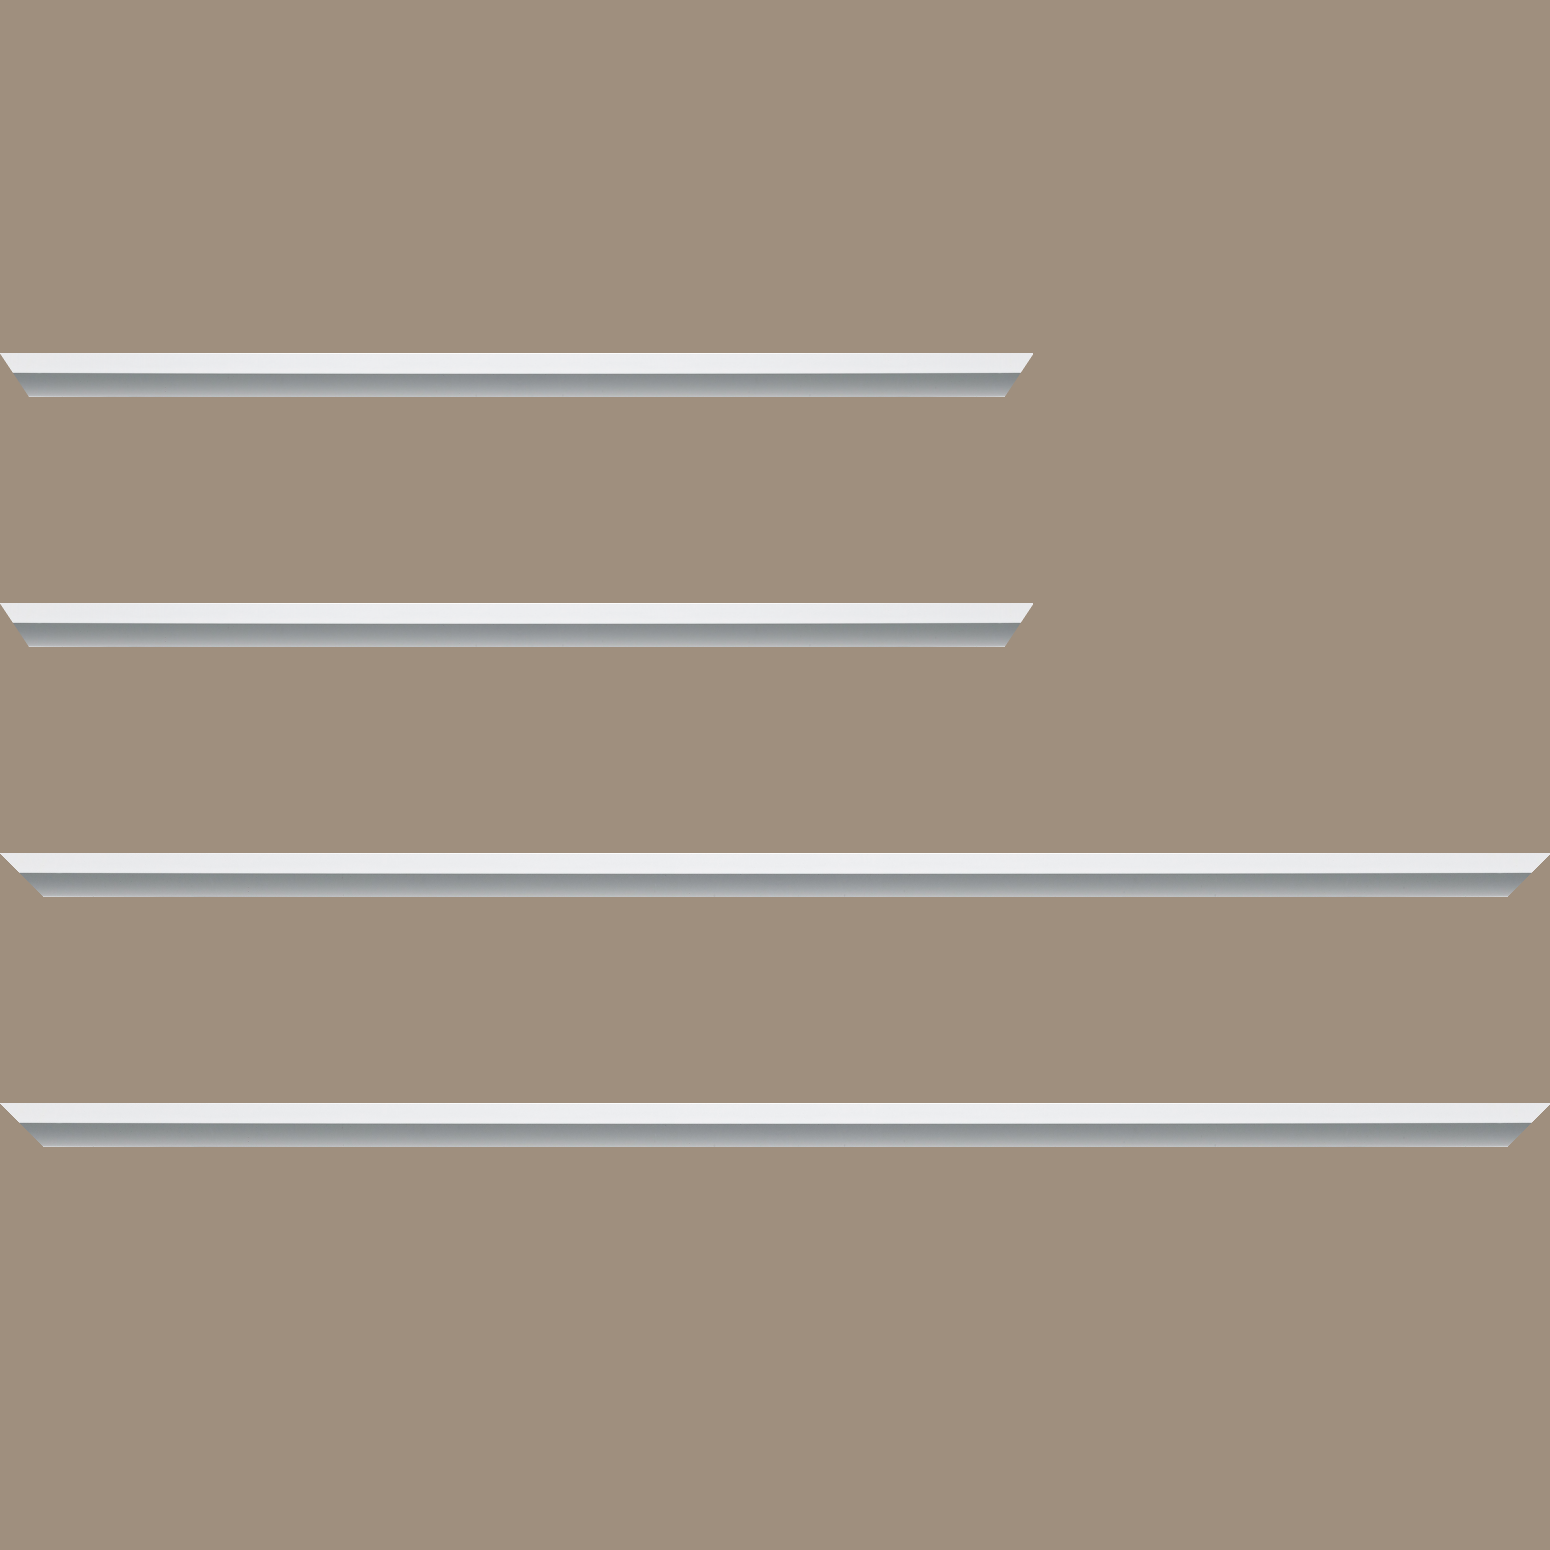 Baguette aluminium profil plat largeur 7mm, couleur blanc mat ,(le sujet qui sera glissé dans le cadre sera en retrait de 9mm de la face du cadre assurant un effet très contemporain) mise en place du sujet rapide et simple: assemblage du cadre par double équerre à vis (livré avec le système d'accrochage qui se glisse dans le profilé) encadrement non assemblé,  livré avec son sachet d'accessoires - 59.4x84.1